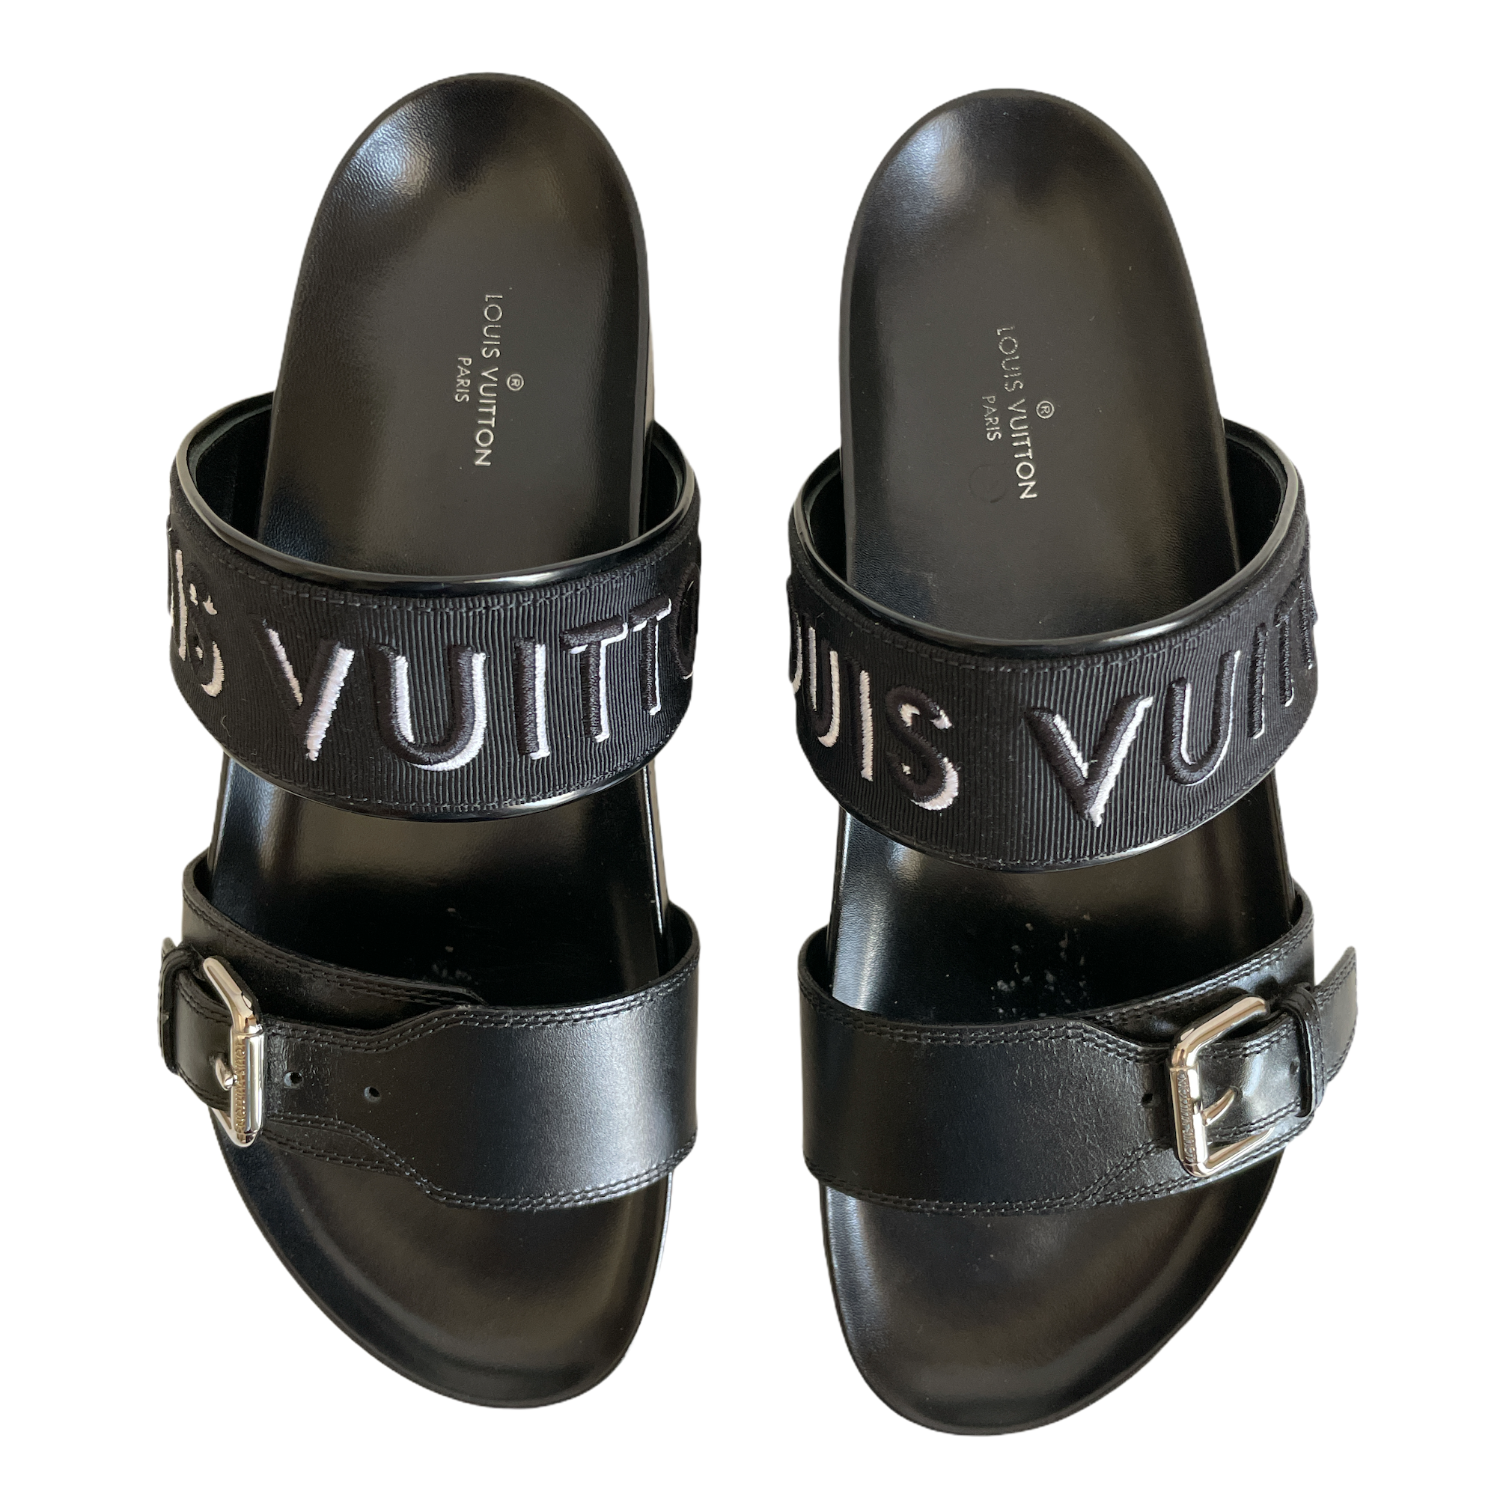 Louis Vuitton Bom Dia Flat Comfort Mule BLACK. Size 38.0